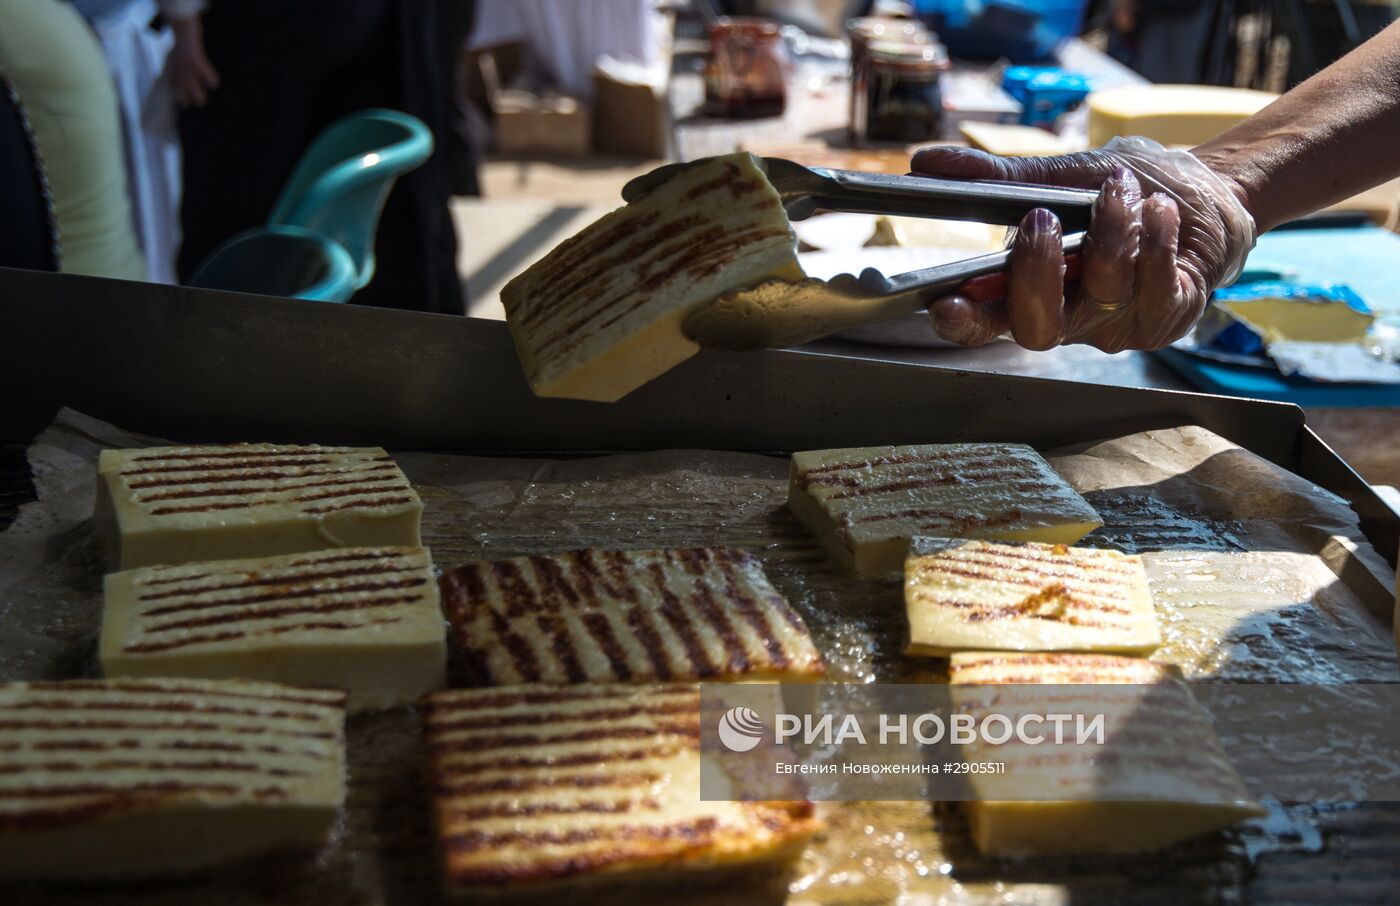 Сырный фестиваль в Московской области